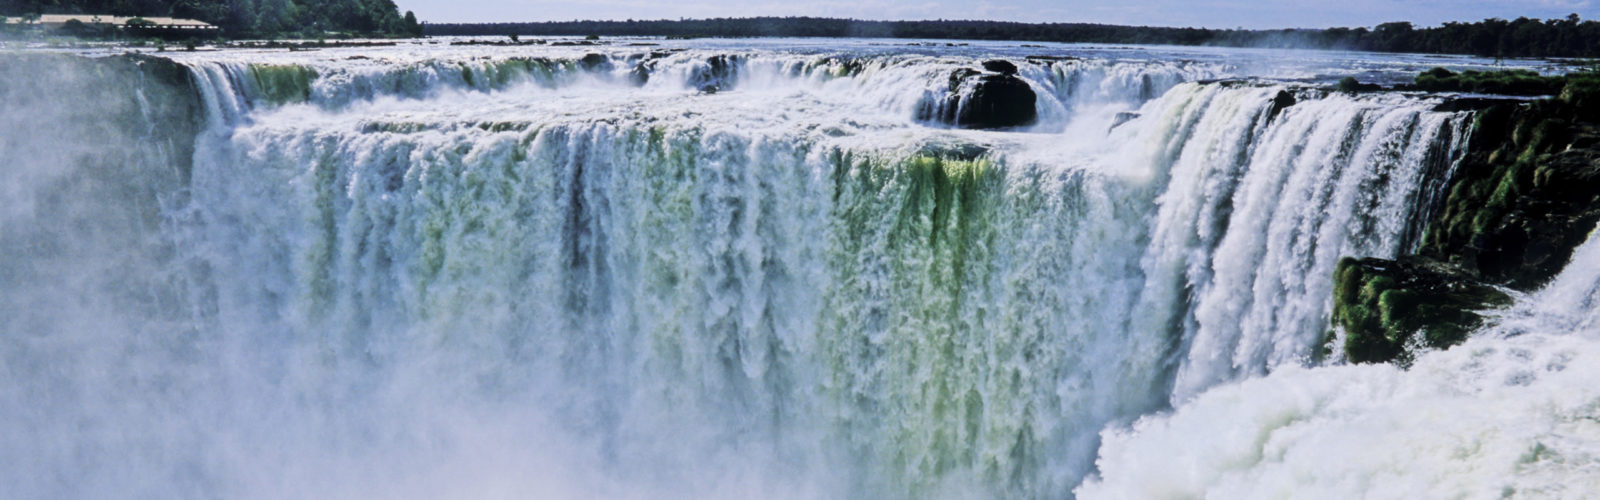 devils-throat-waterfall-iguassu-falls